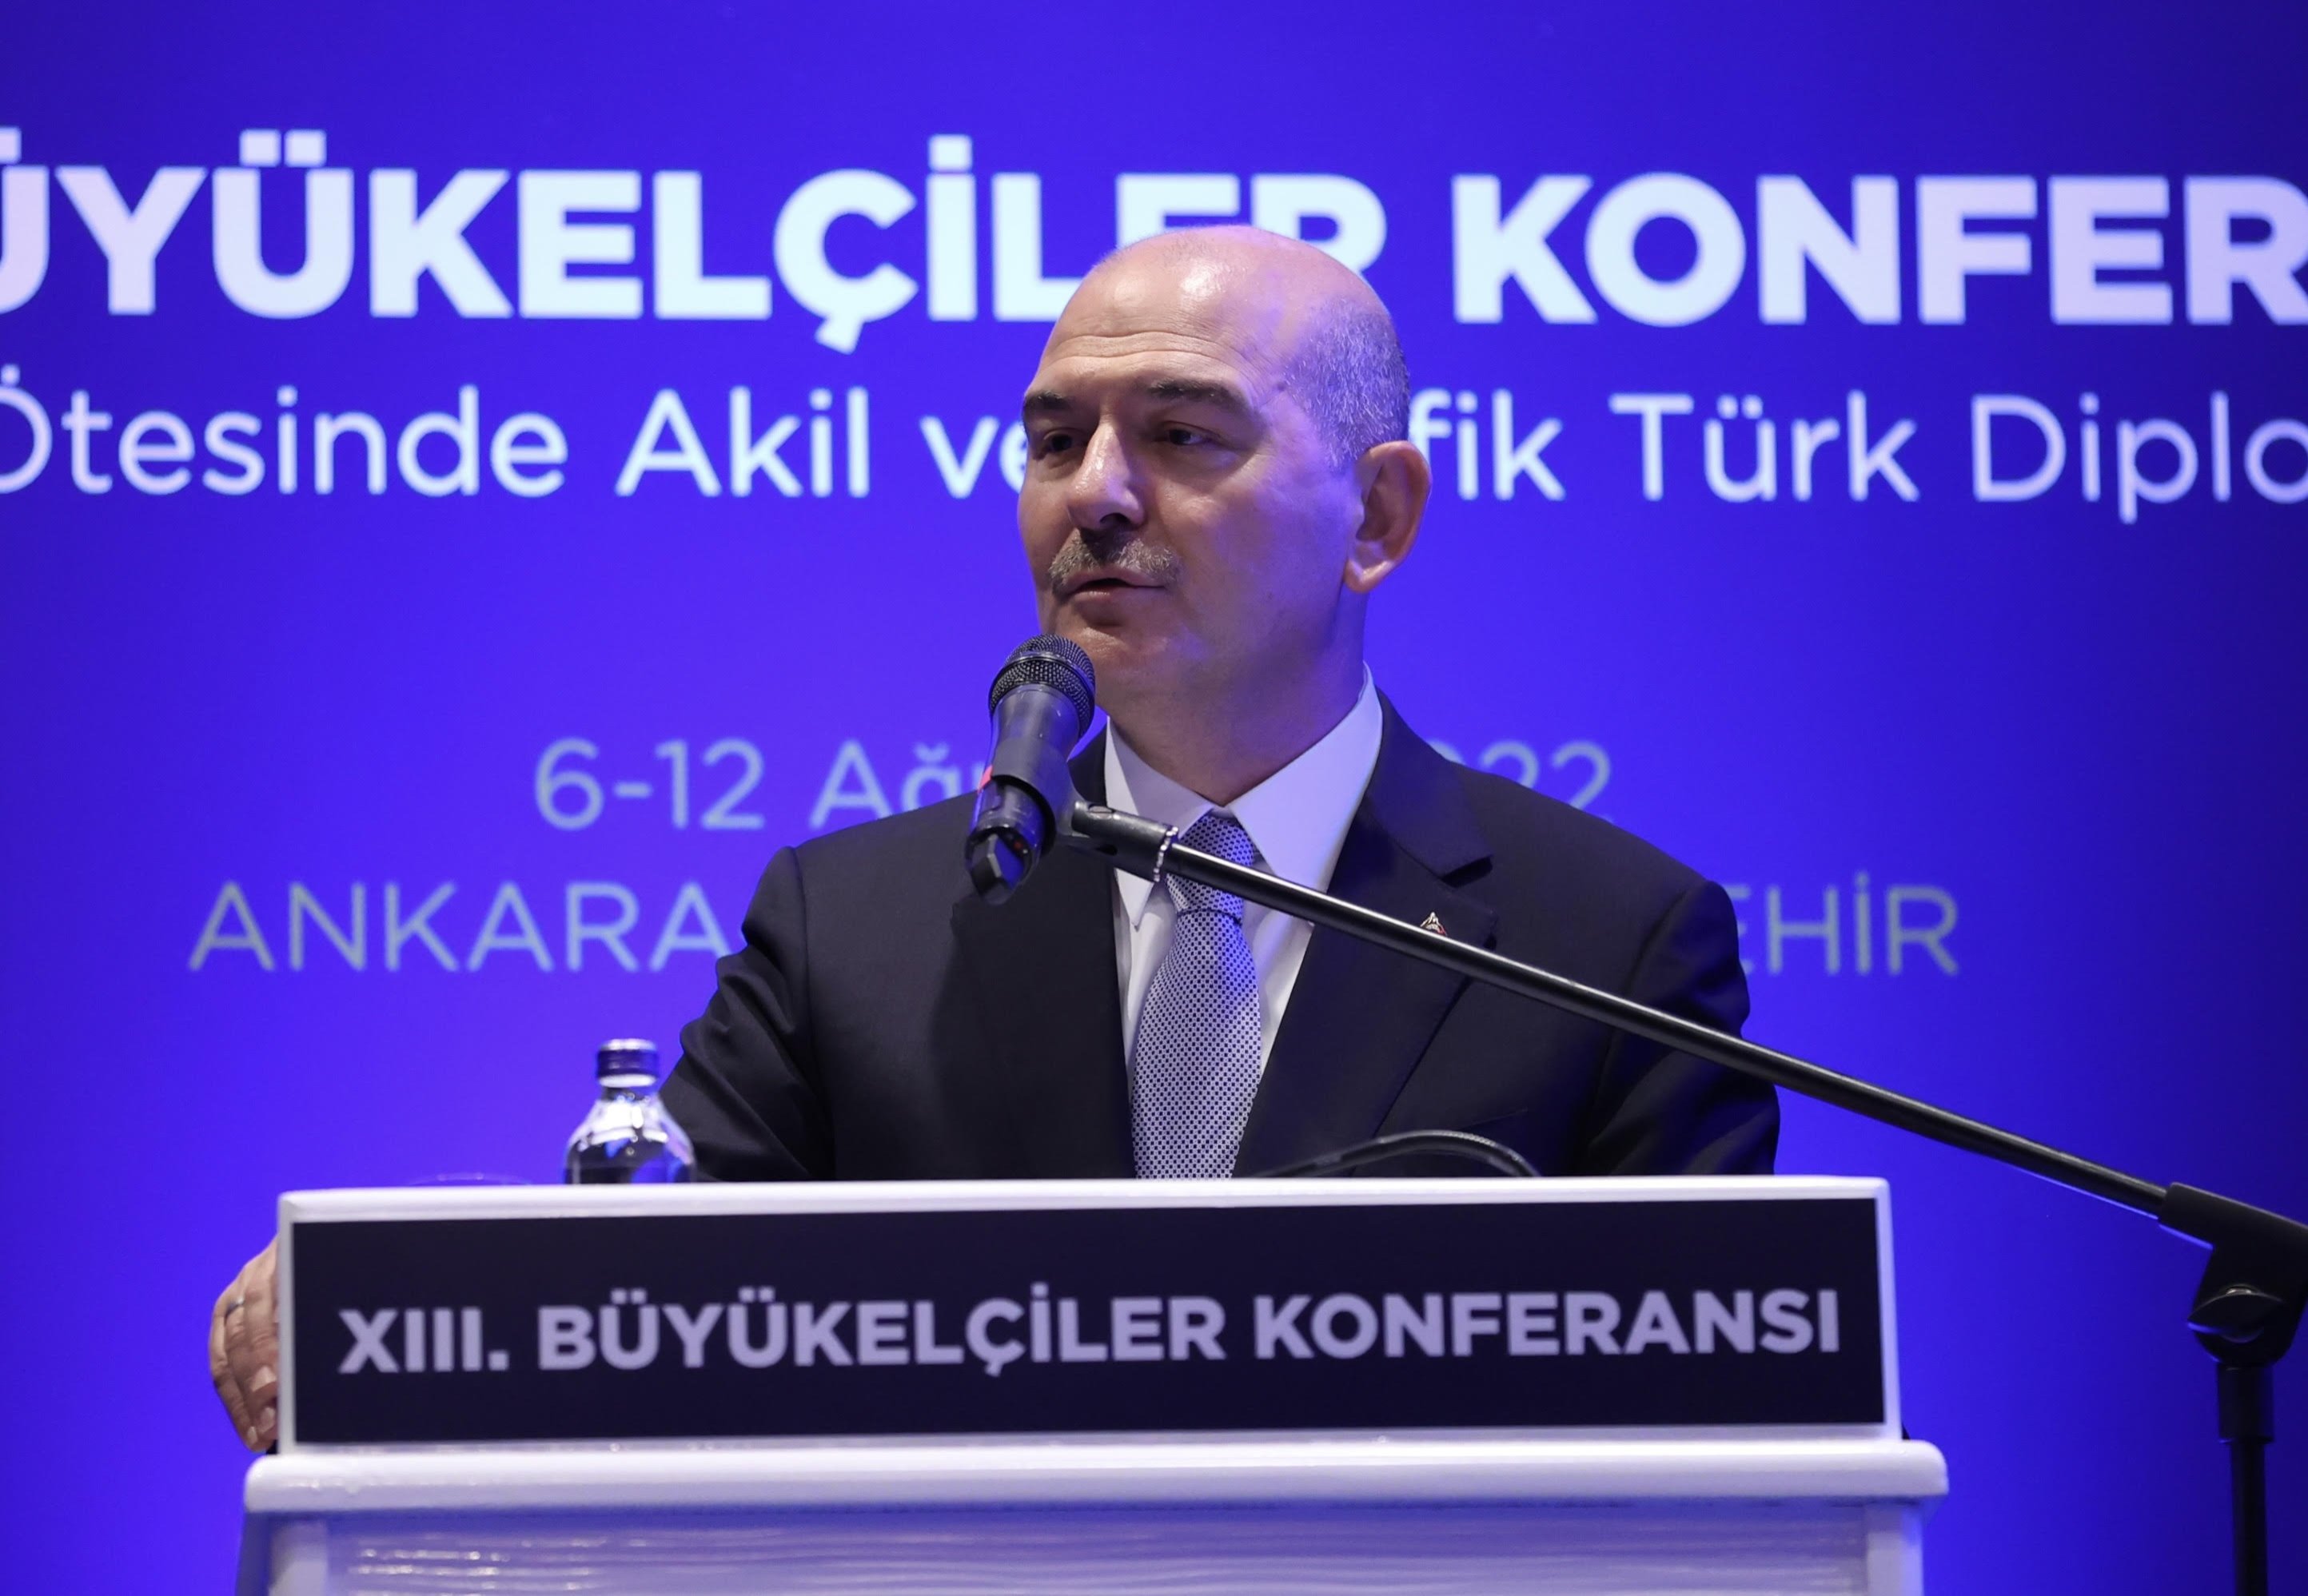 No PKK terrorists will remain in rural Türkiye by 2023 - minister